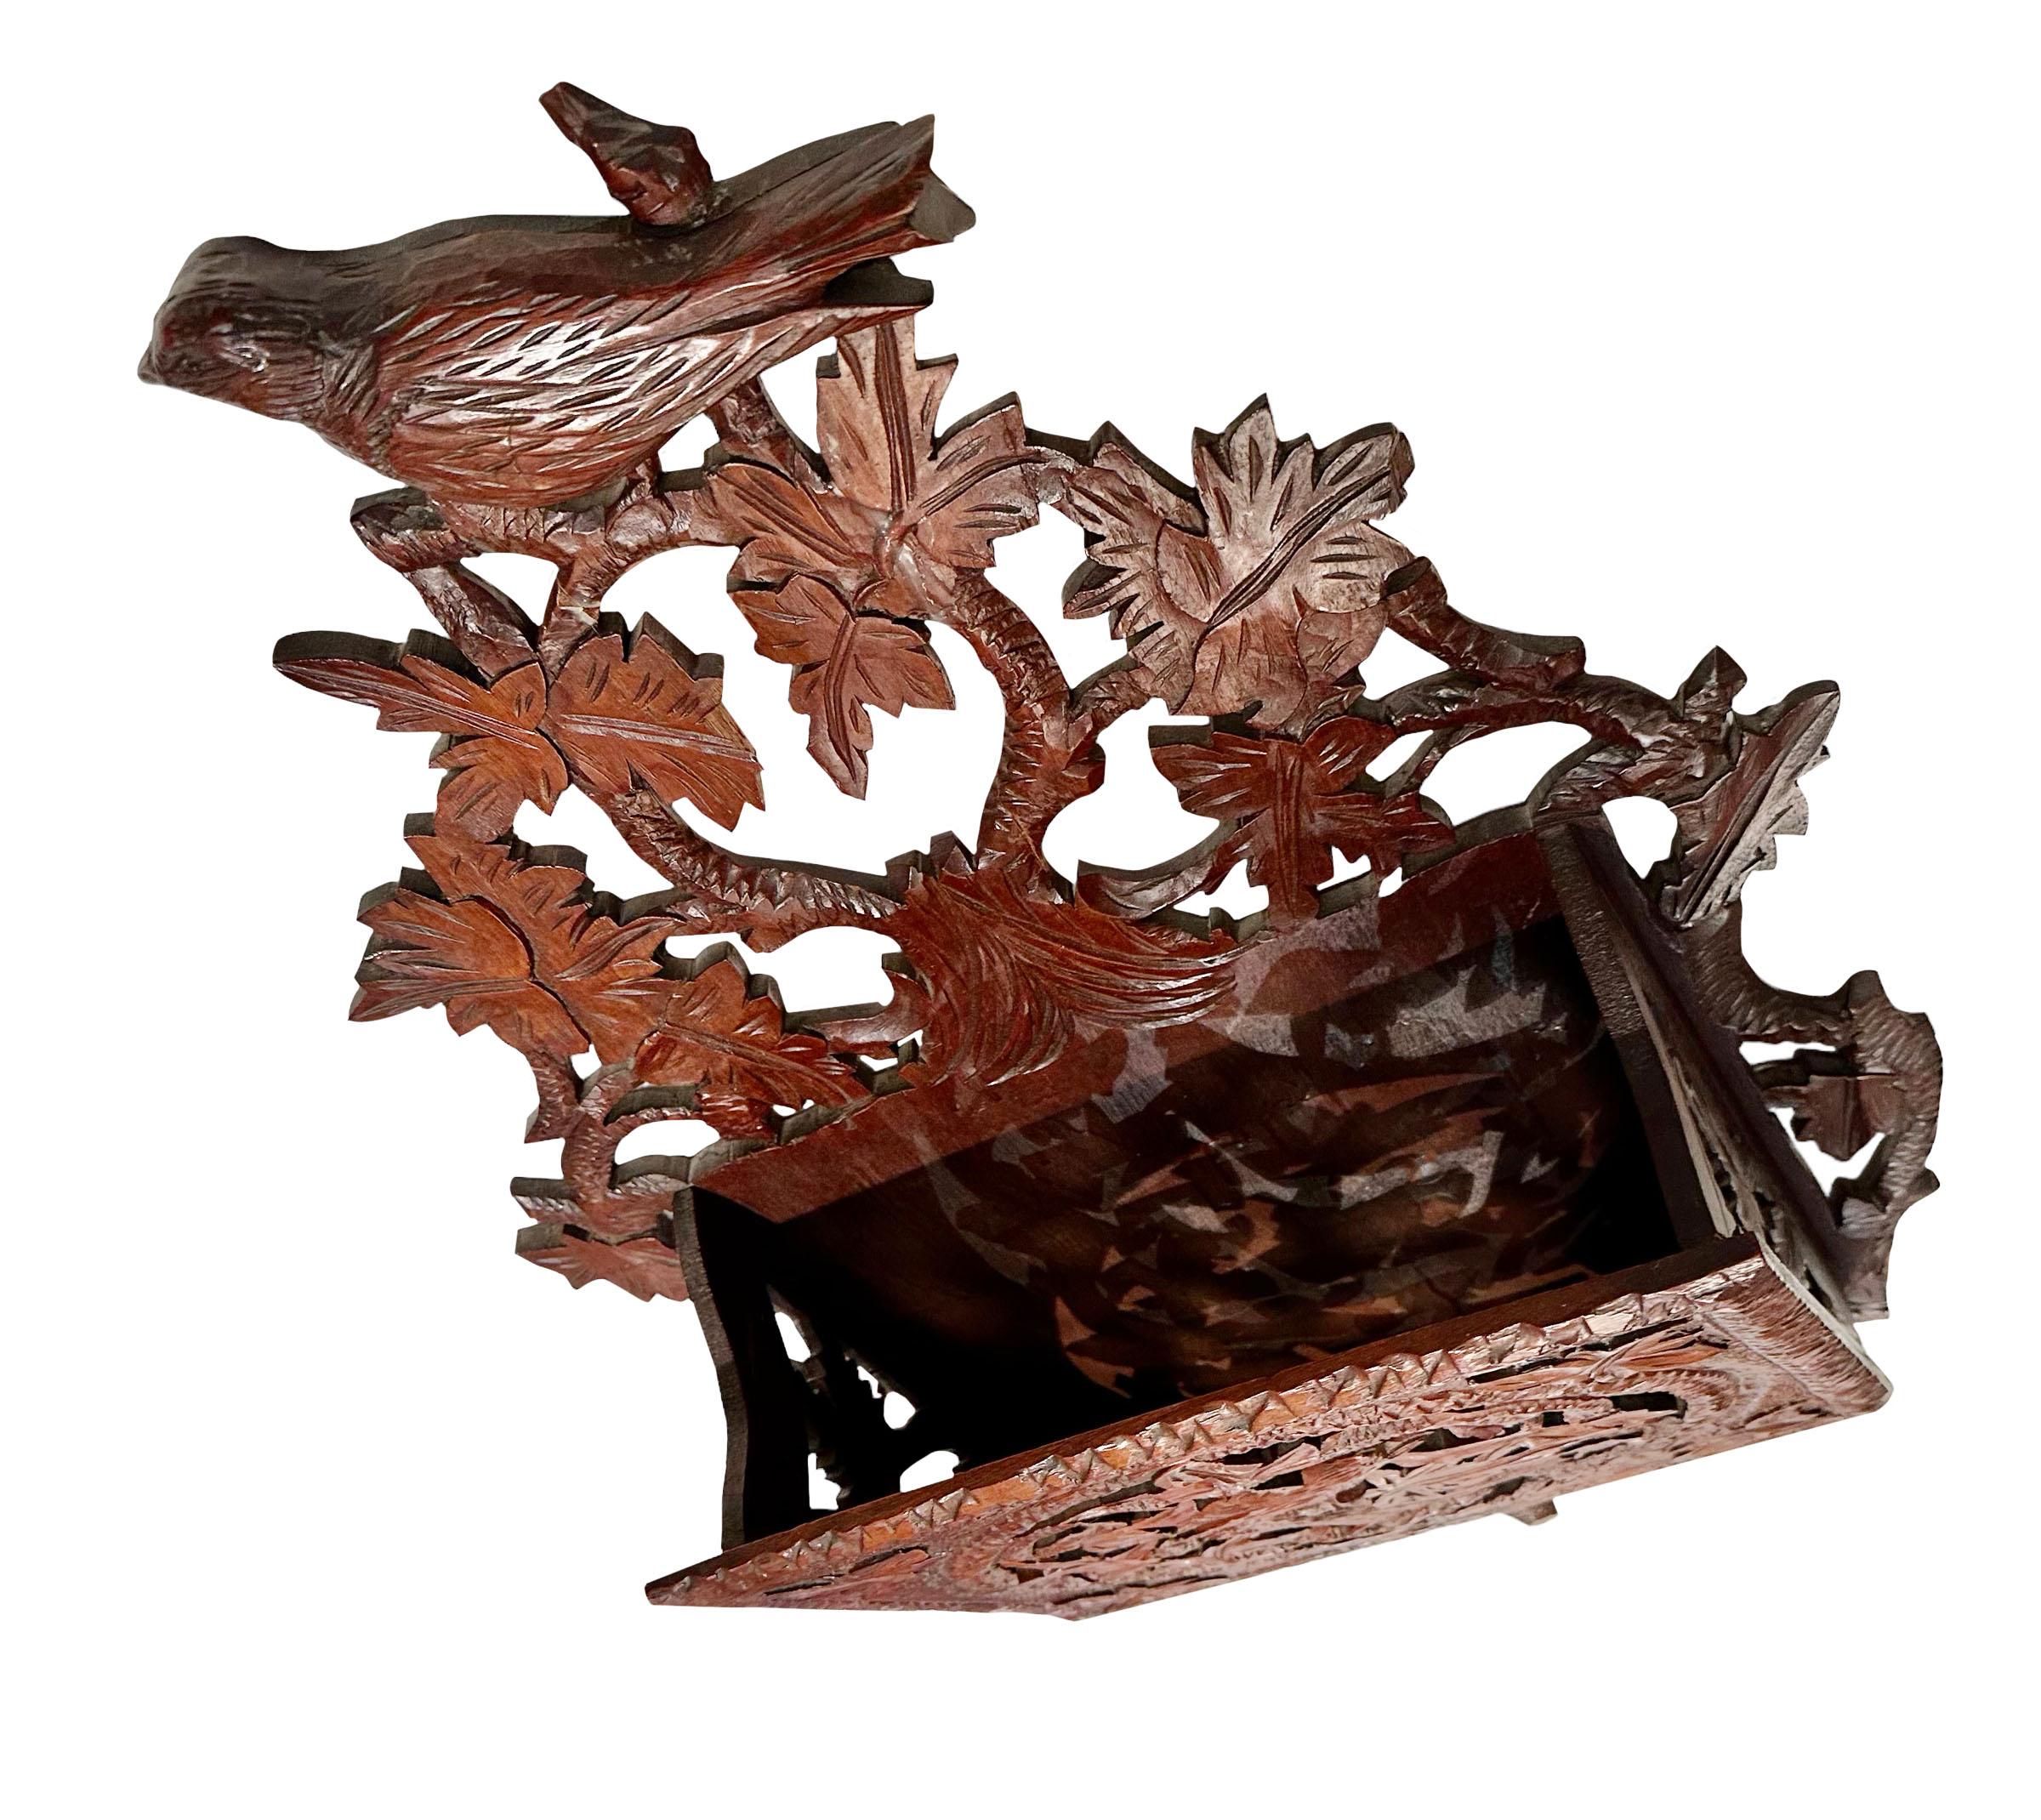 Porte-journaux et porte-revues en bois sculpté de la Forêt-Noire, datant des années 1890, avec des sculptures complexes, des oiseaux, des vignes et des feuilles.